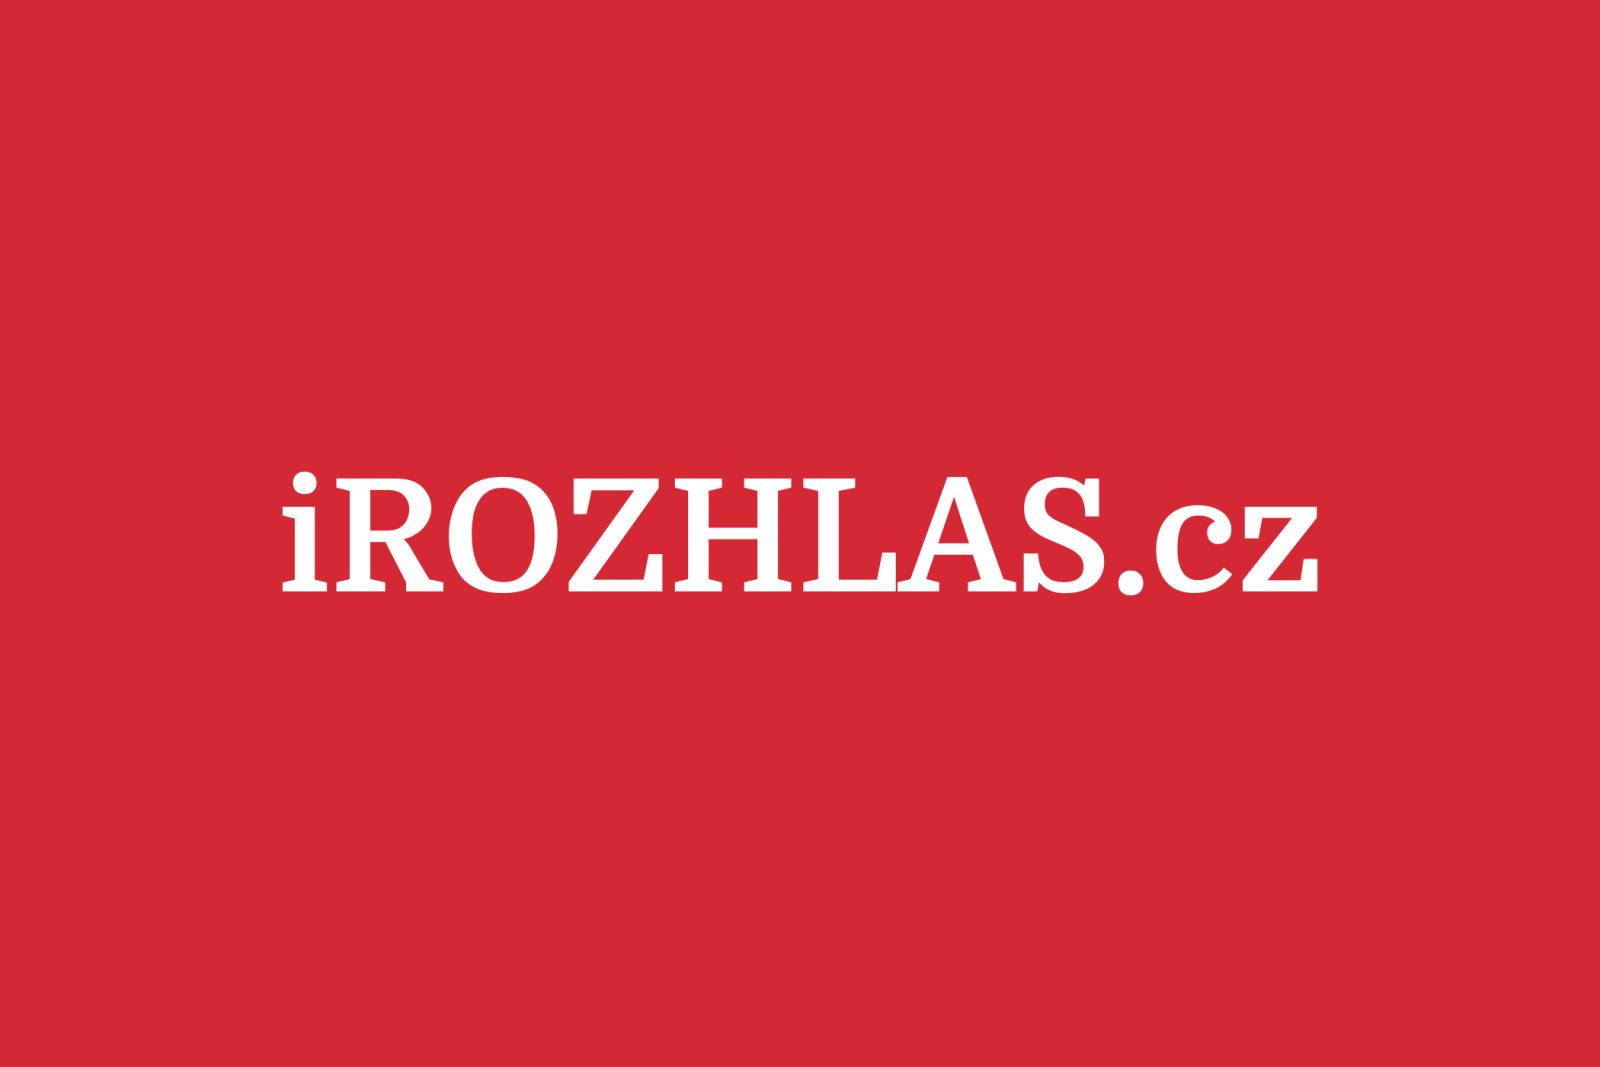 https://www.irozhlas.cz/sites/default/files/styles/zpravy_fotogalerie_large/public/uploader/2019-07-14t125027z_7_190714-204525_nkr.JPG?itok=kSla95CN